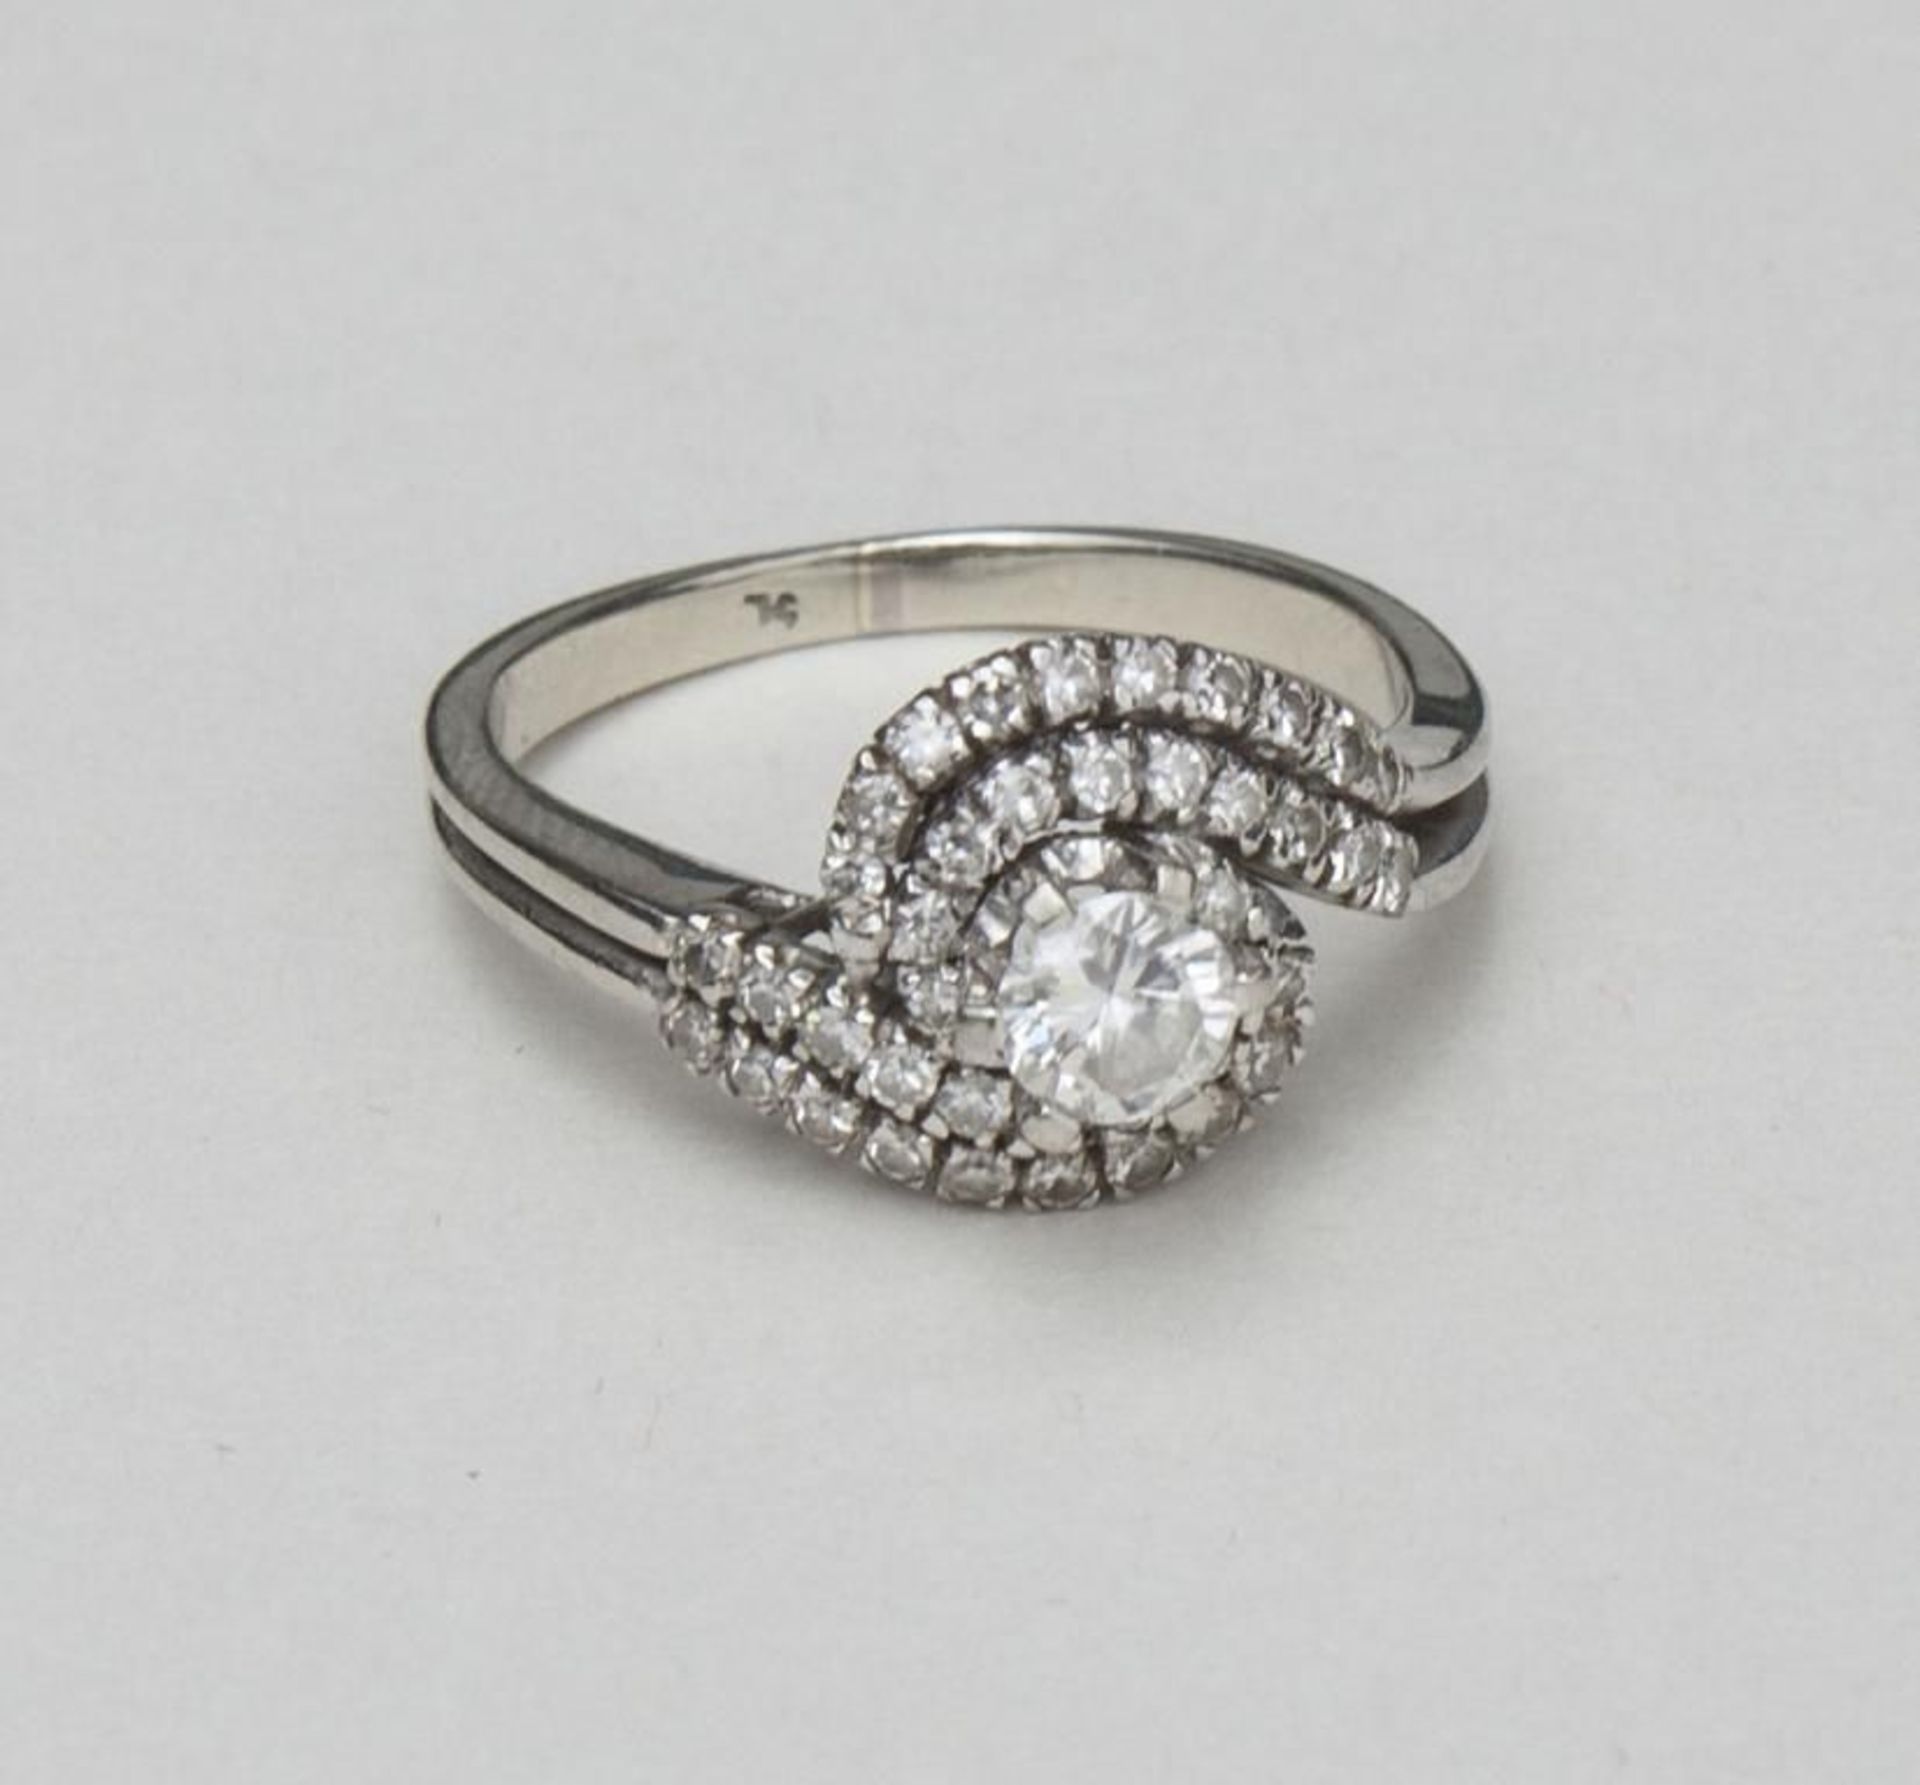 Weißgold-Ring mit Diamantbesatz  zweireihige Wellenform mit 40 kl. Diamanten besetzt, mittig mit